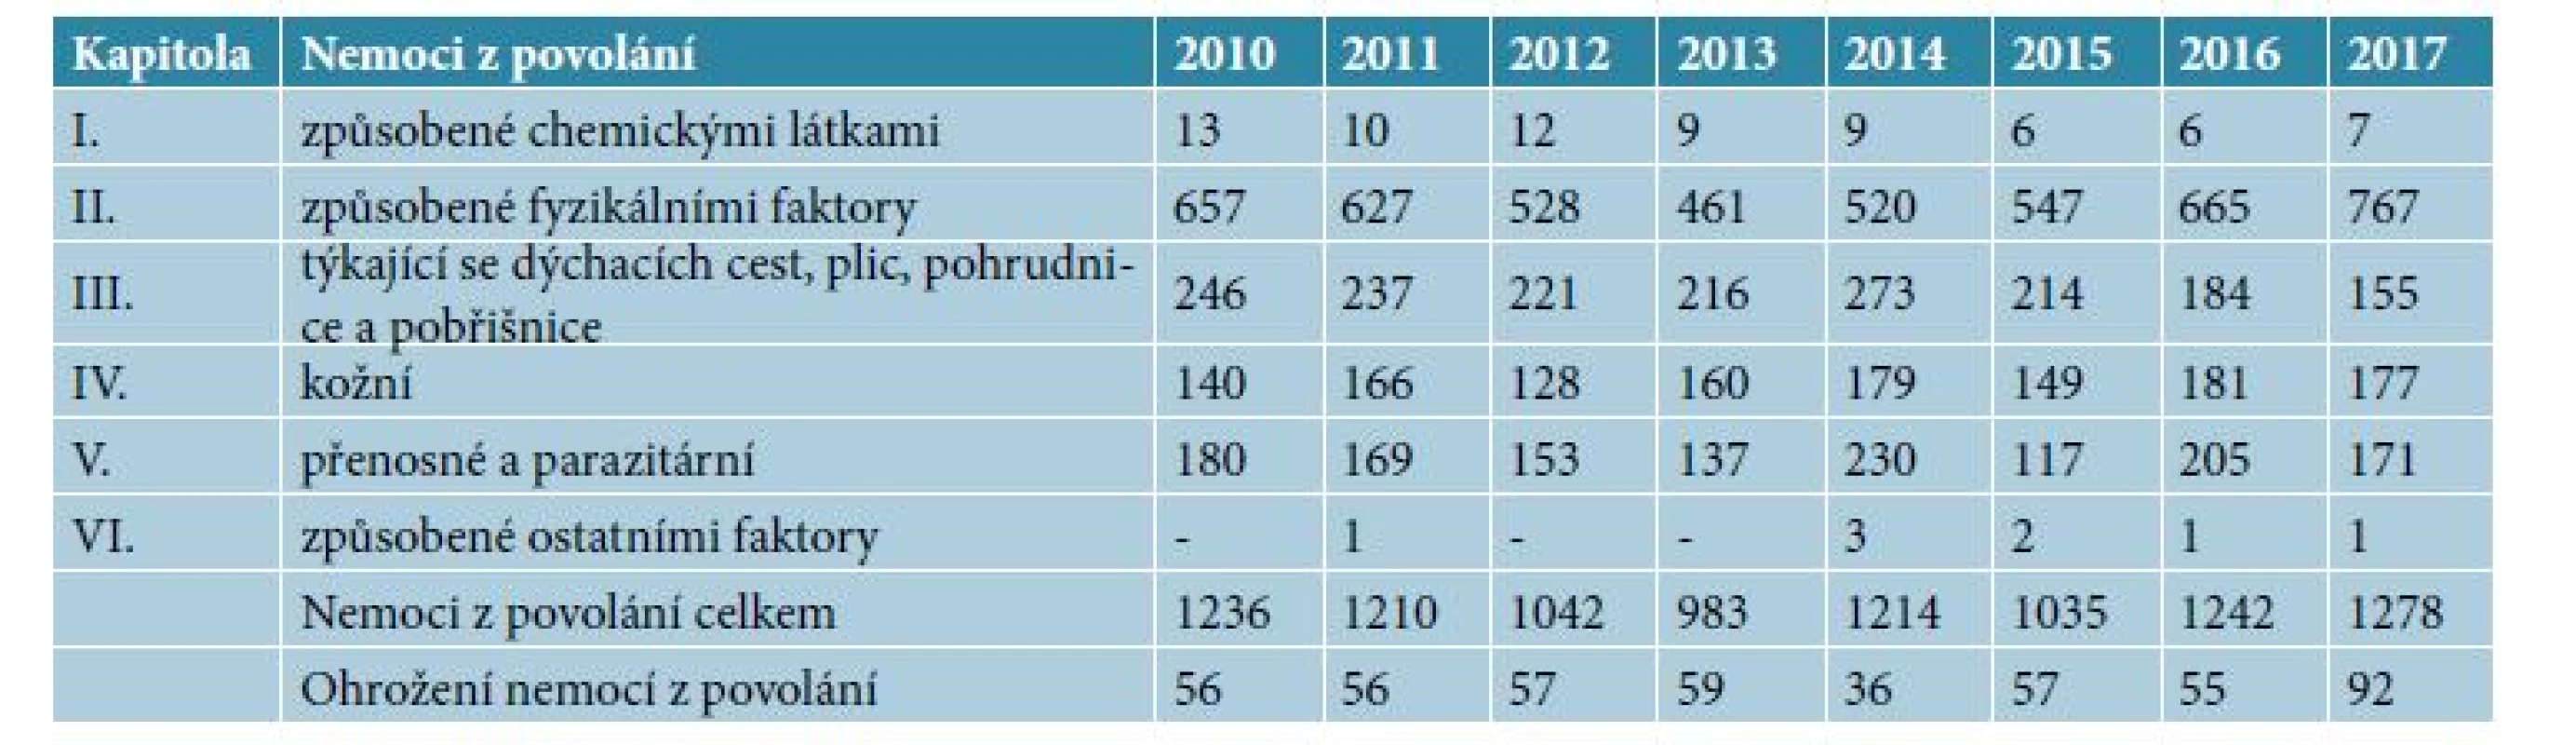 Nemoci z povolání a ohrožení nemocí z povolání v České republice v letech 2010–2017 podle kapitol Seznamu NzP